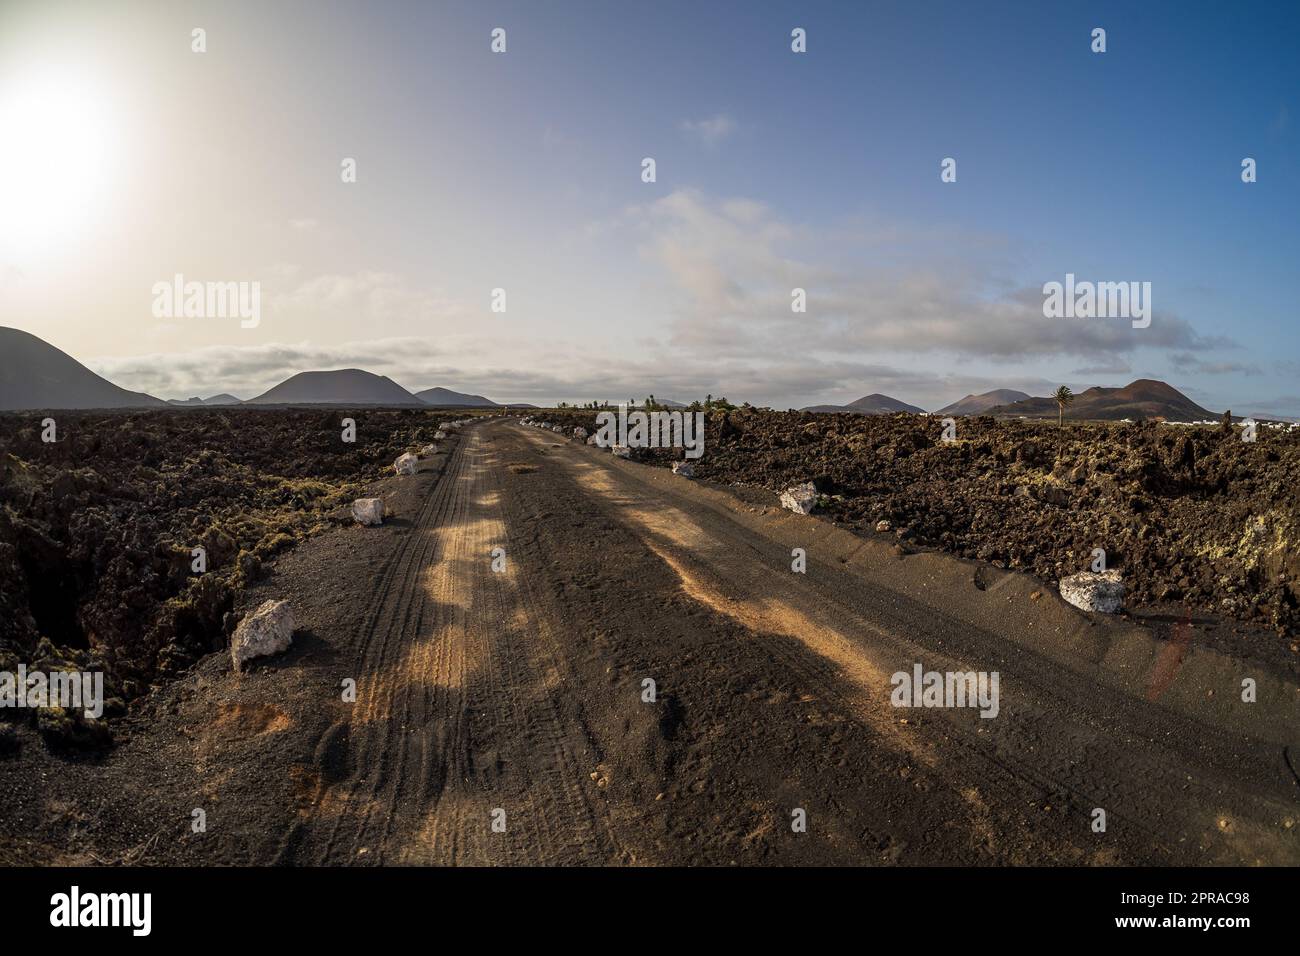 Typische vulkanische Landschaft. Straße in die Ferne. Lanzarote, Kanarische Inseln. Spanien. Stockfoto